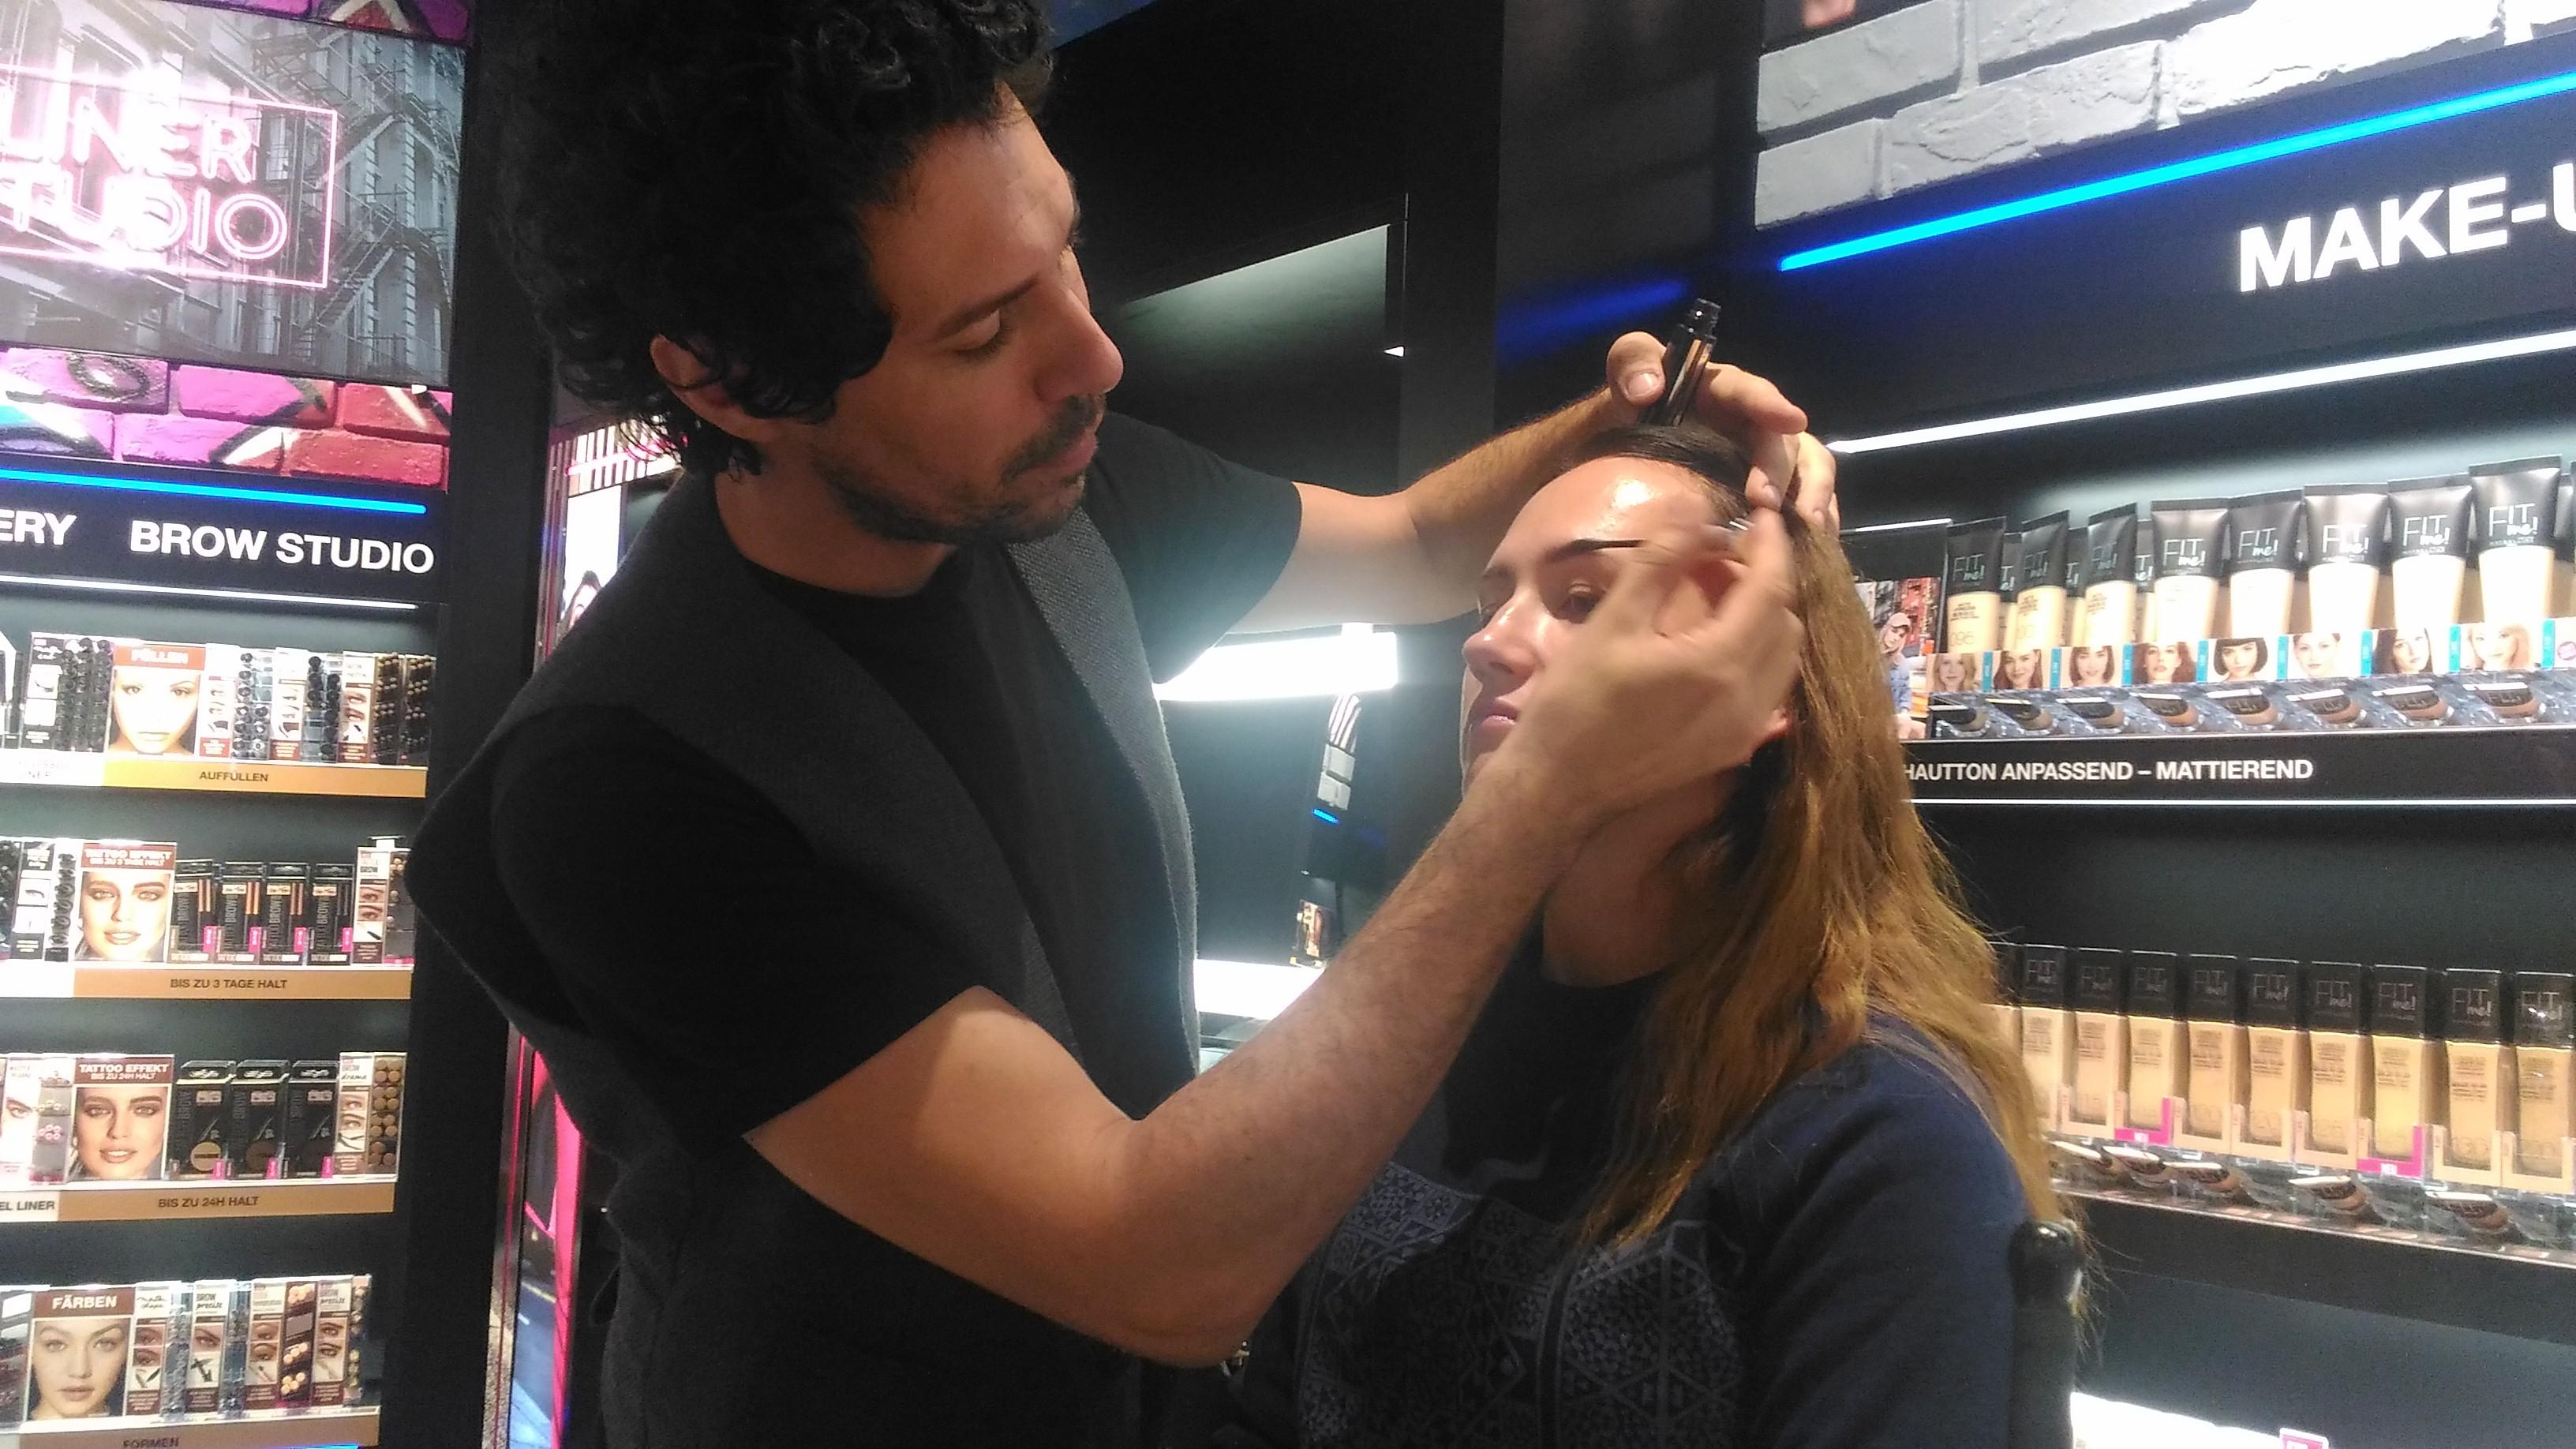 #beautychallenge #makeup Make-up von Boris Entrup 